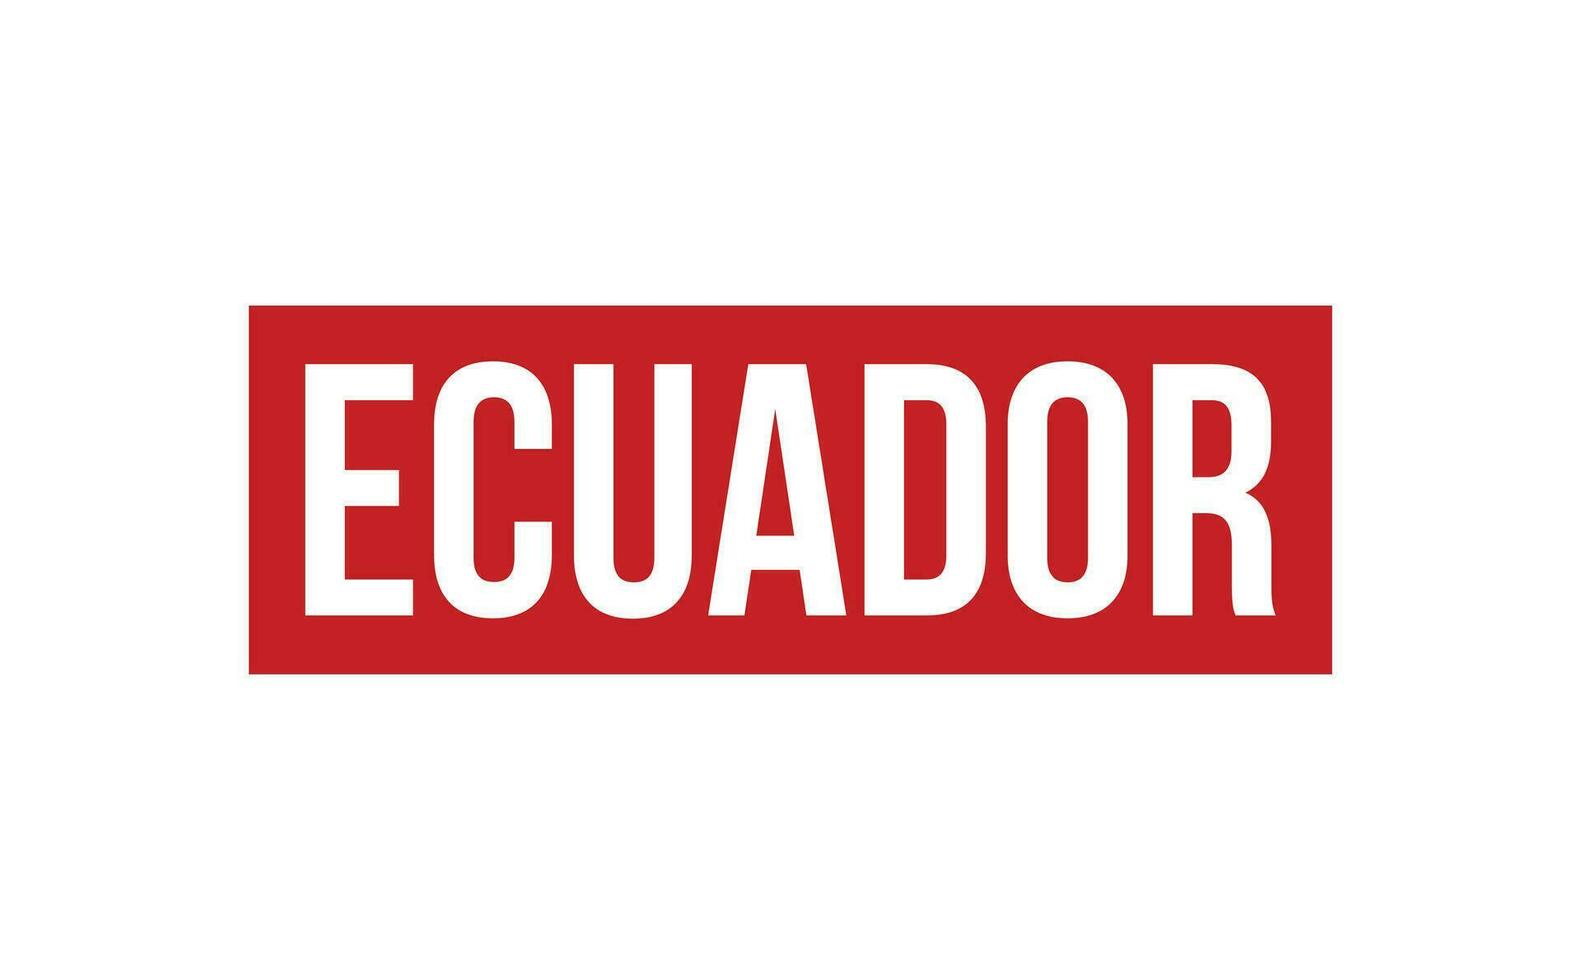 Ecuador Rubber Stamp Seal Vector